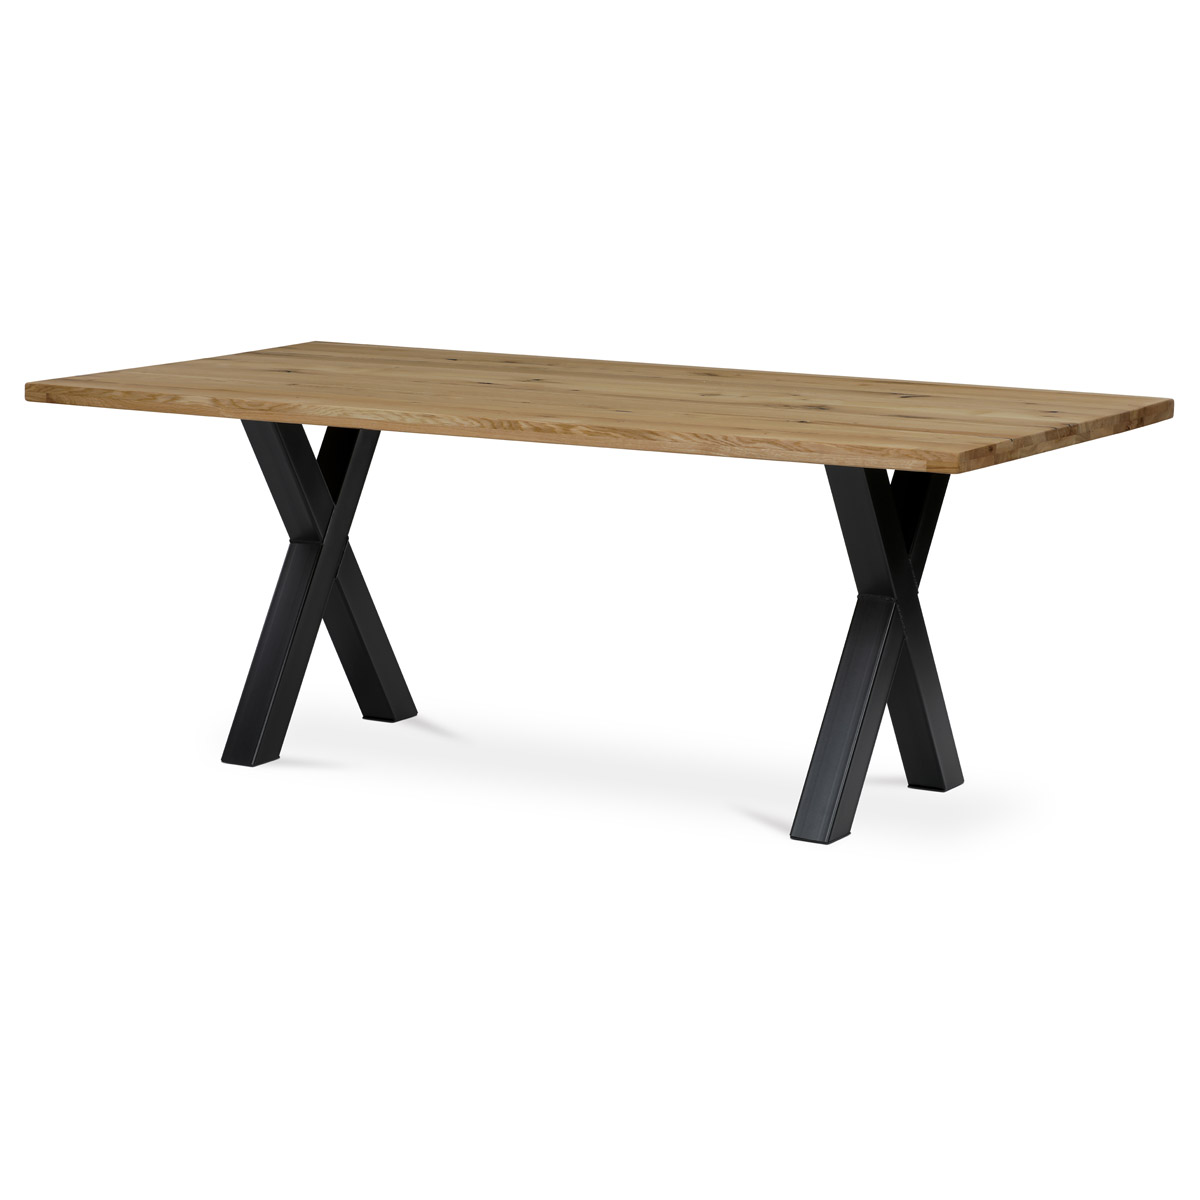 Stůl jídelní, 200x100x75 cm,masiv dub, kovová noha ve tvaru písmene"X", černý lak